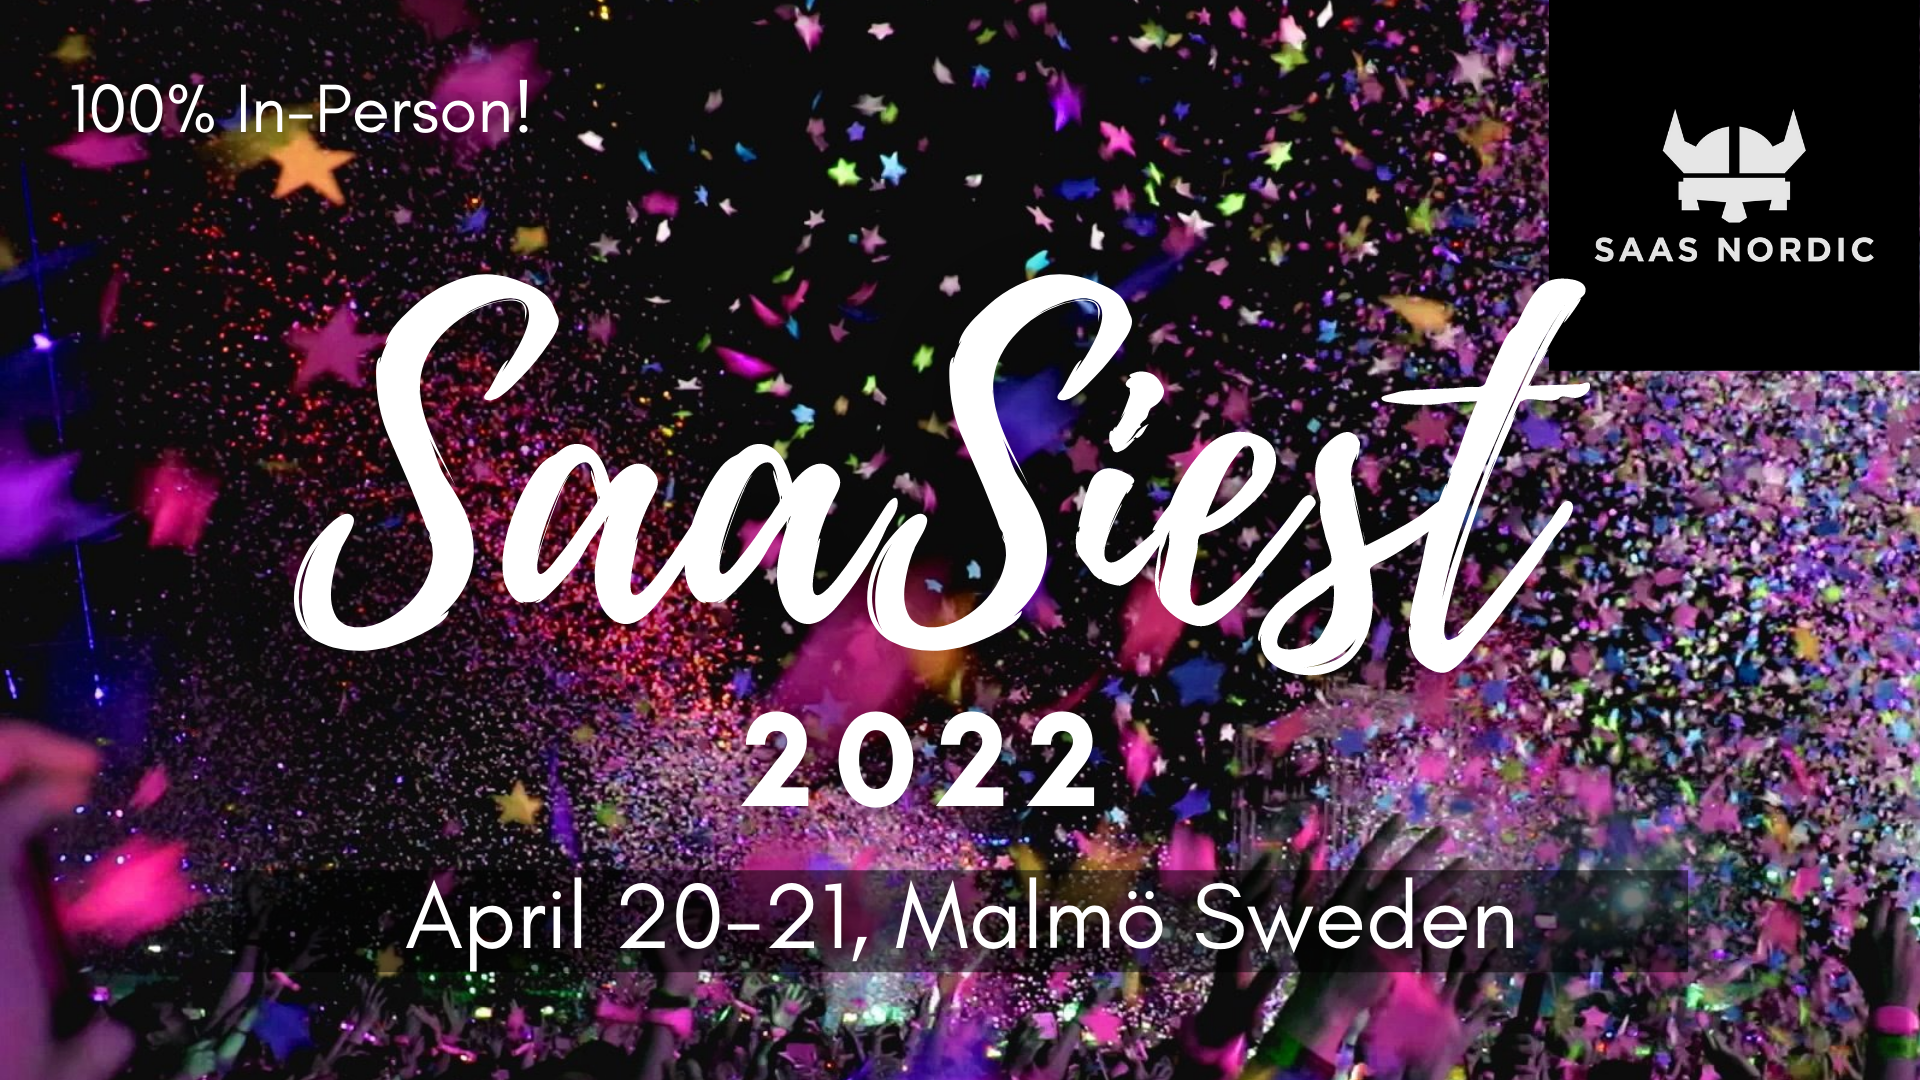 Good Sign at SaaSiest - Sweden